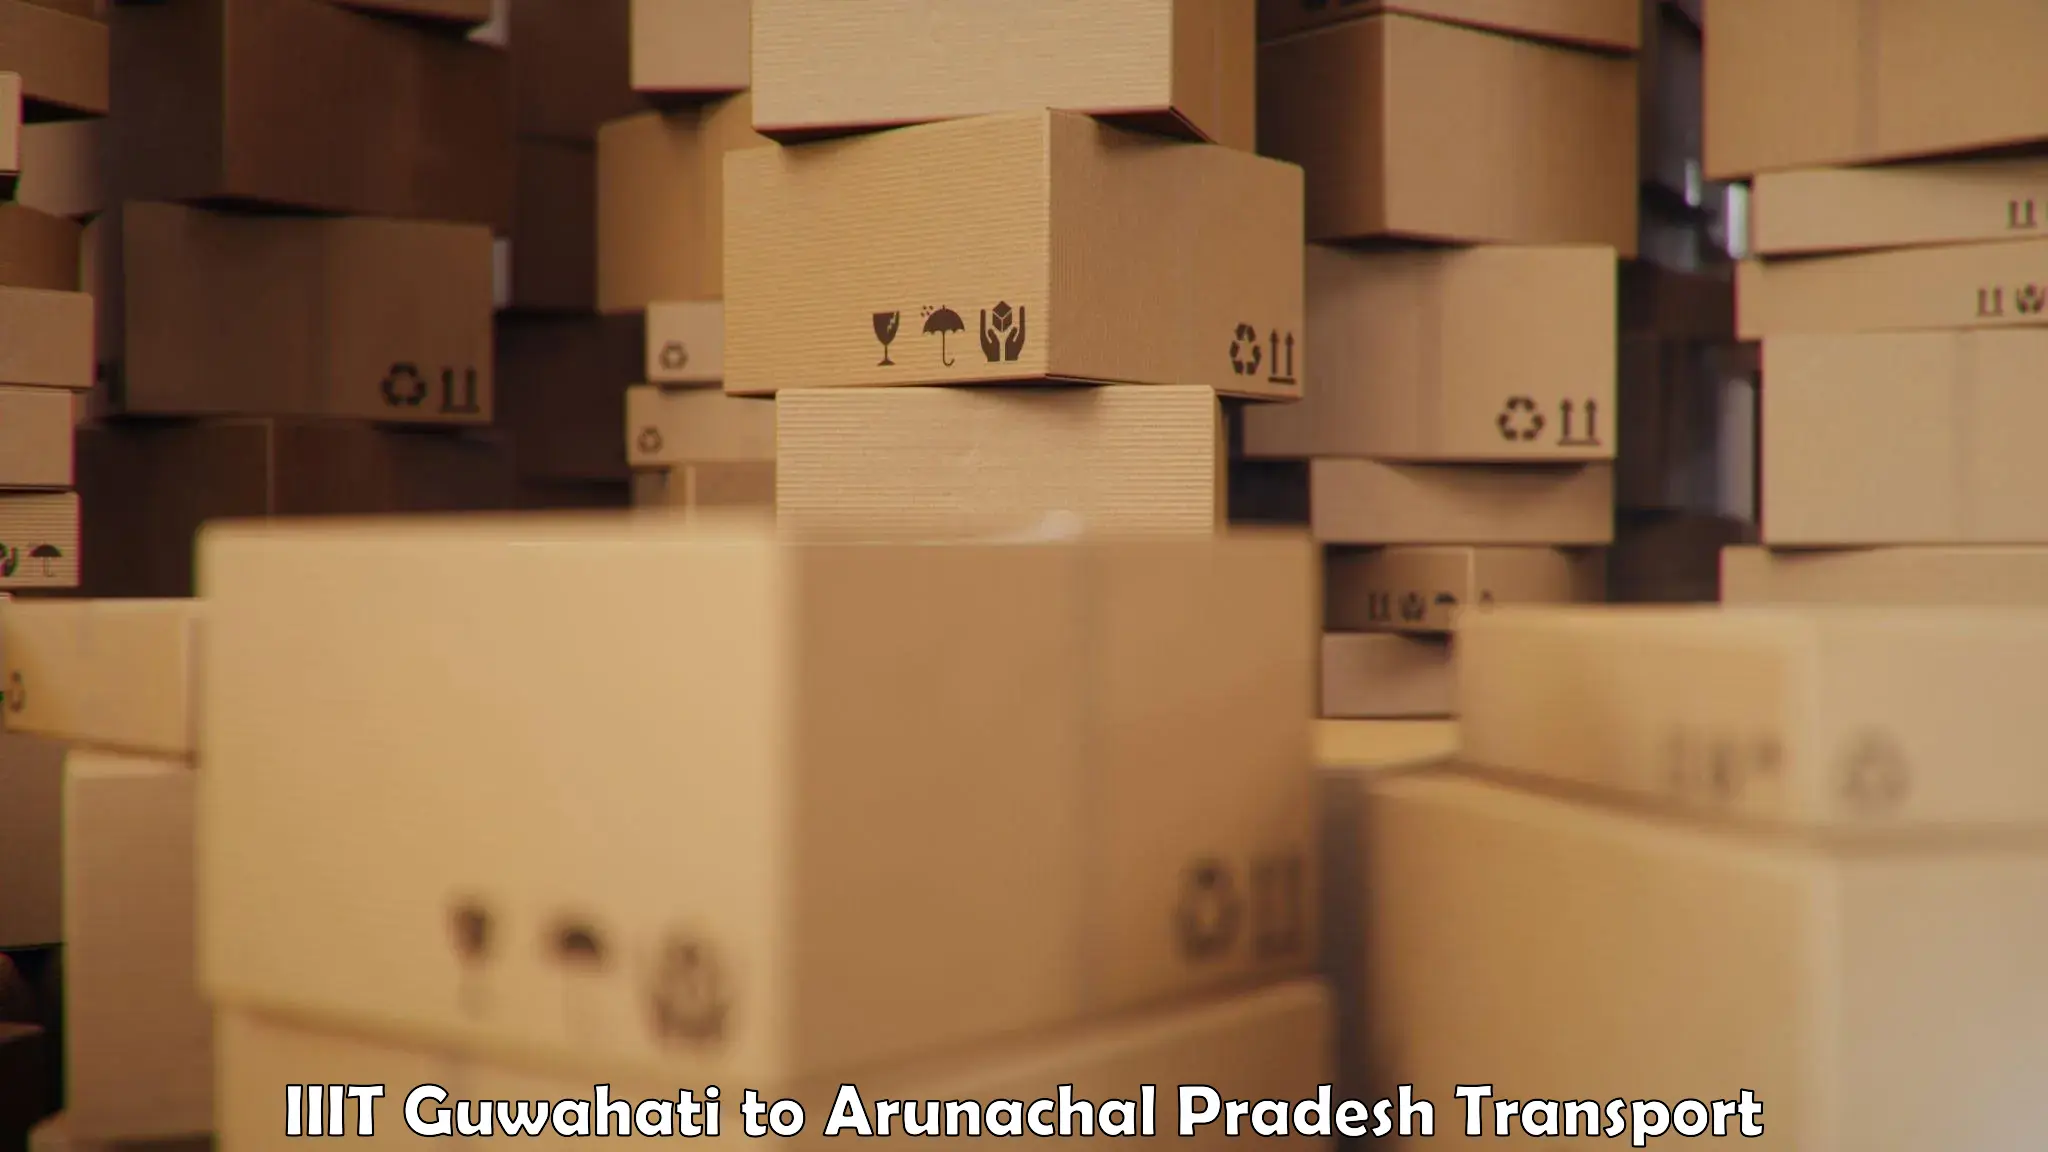 Best transport services in India IIIT Guwahati to Arunachal Pradesh